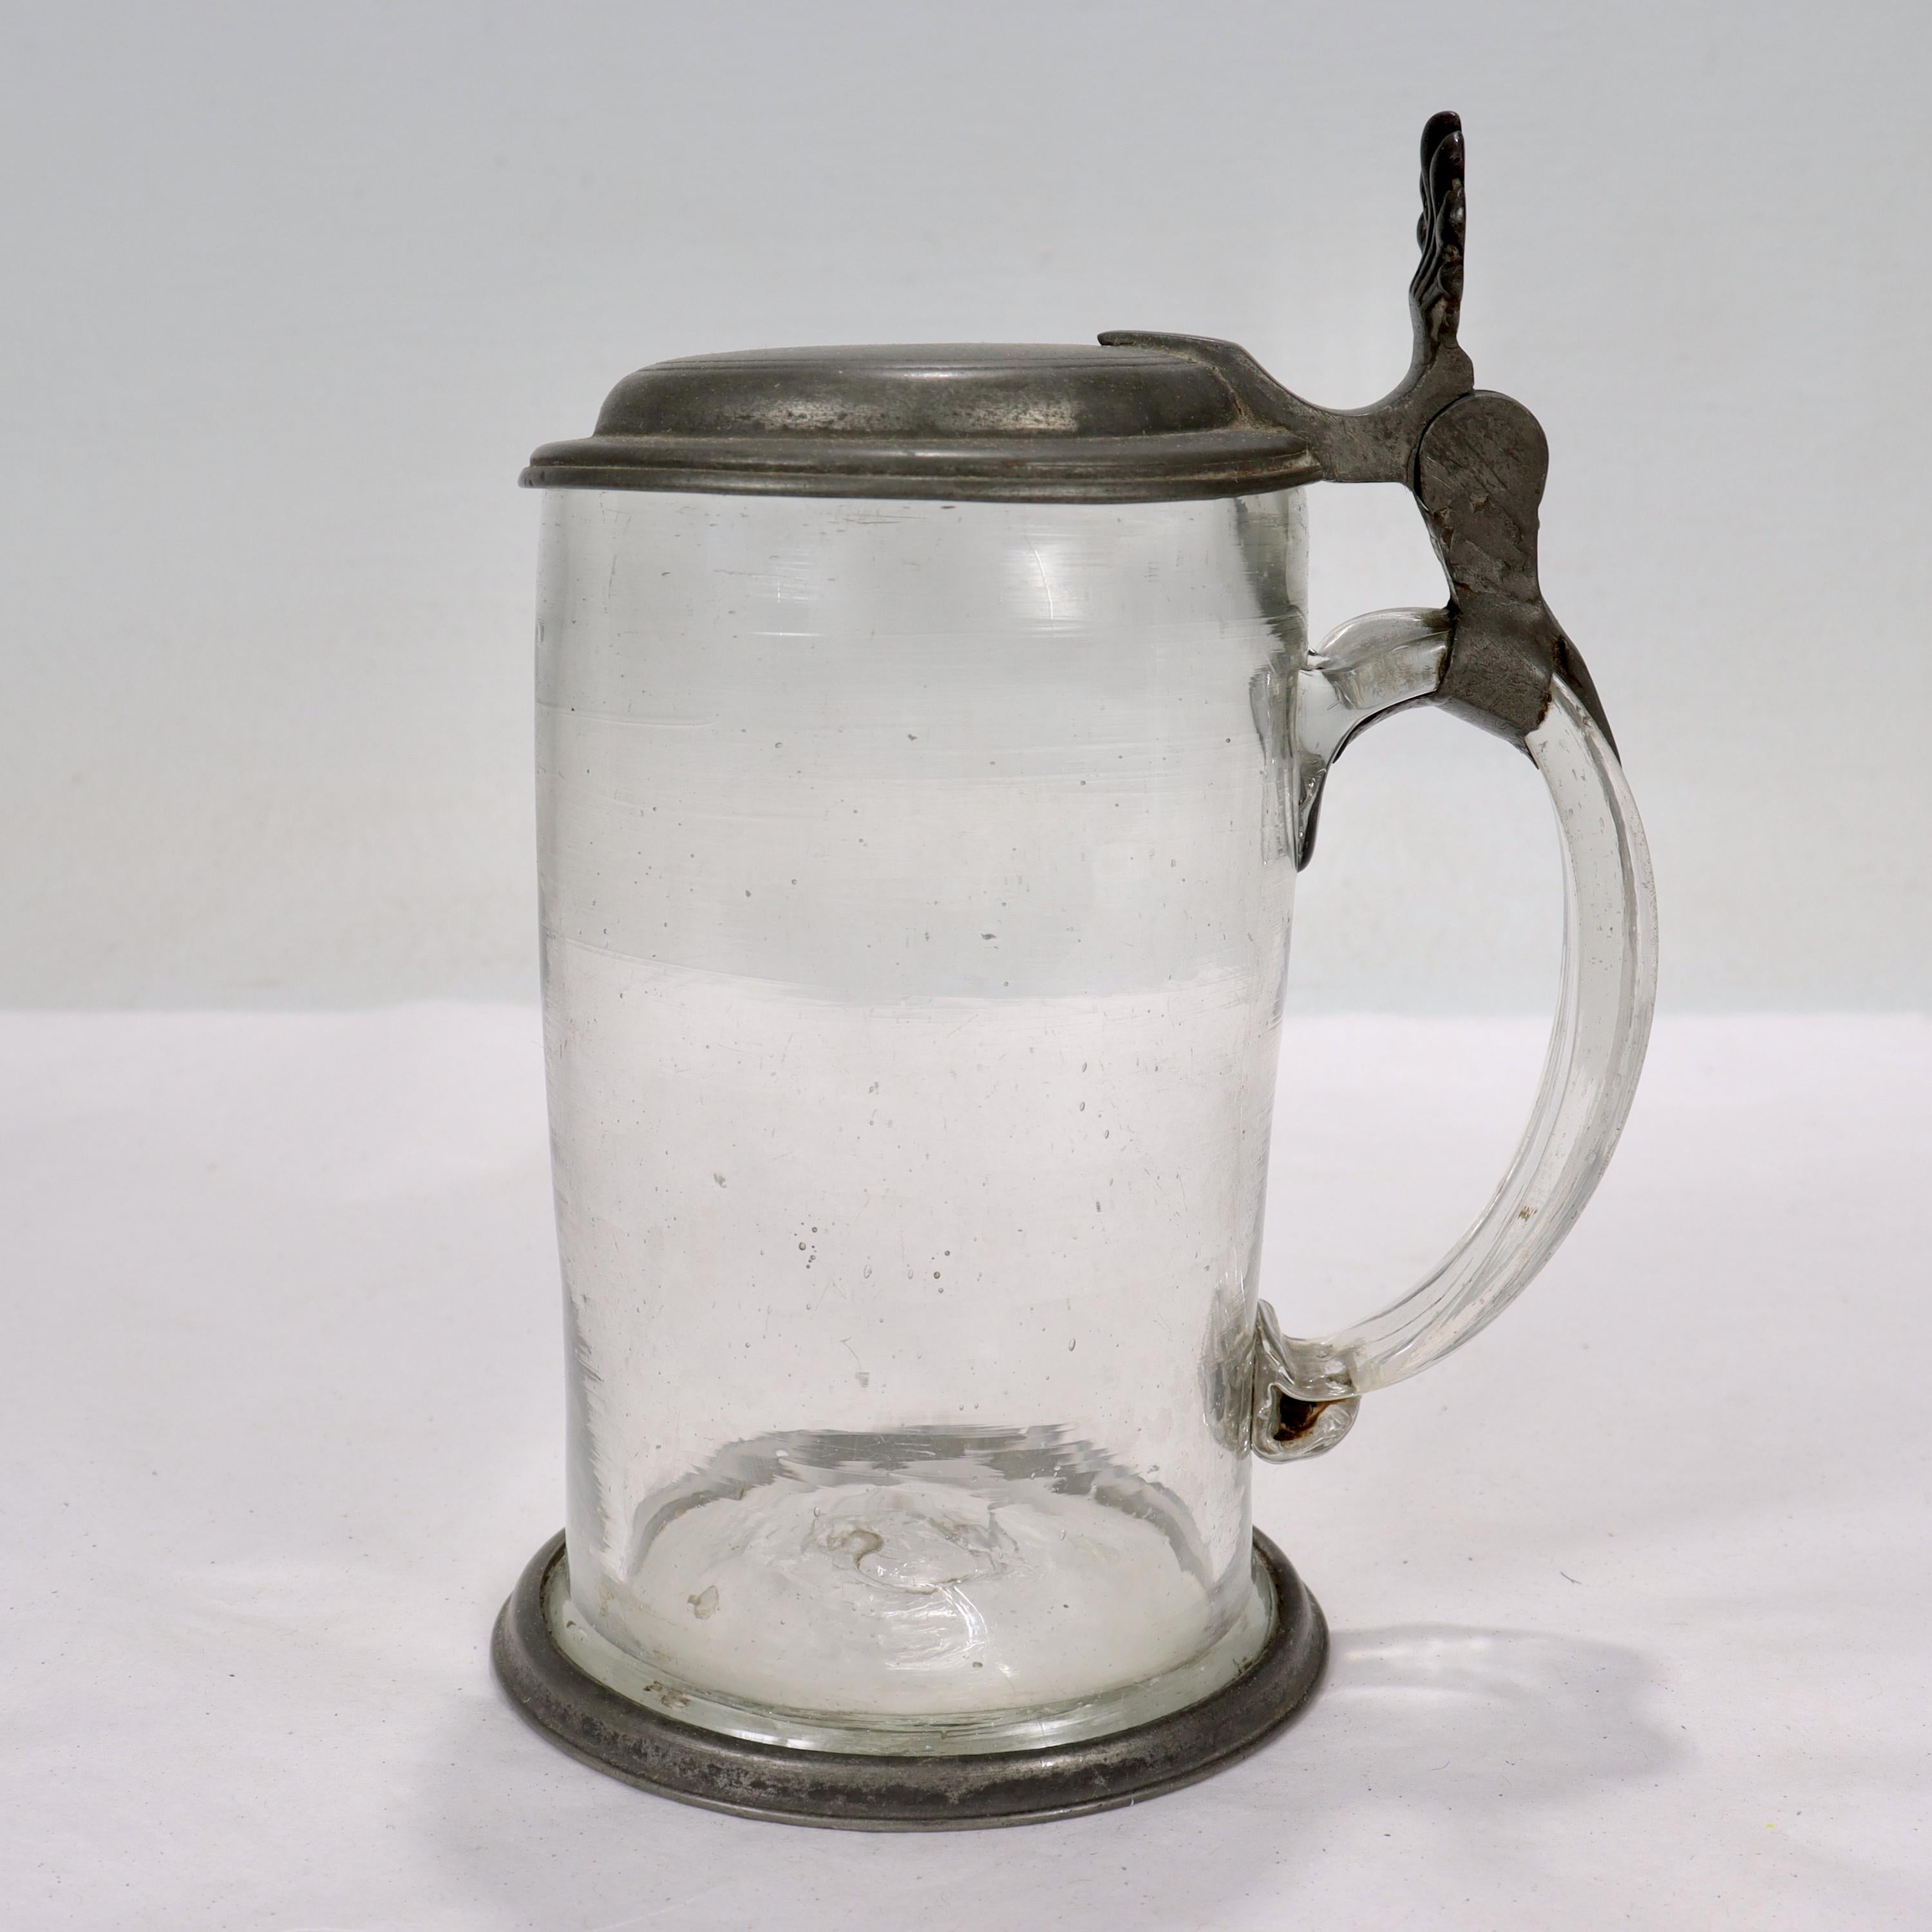 Eine feine antike 18. Jahrhundert Zinn & Glas Bierkrug.

In Form eines Glaskrugs mit Zinndeckel und Zinnfußrand. 

Auf dem Deckel monogrammiert 